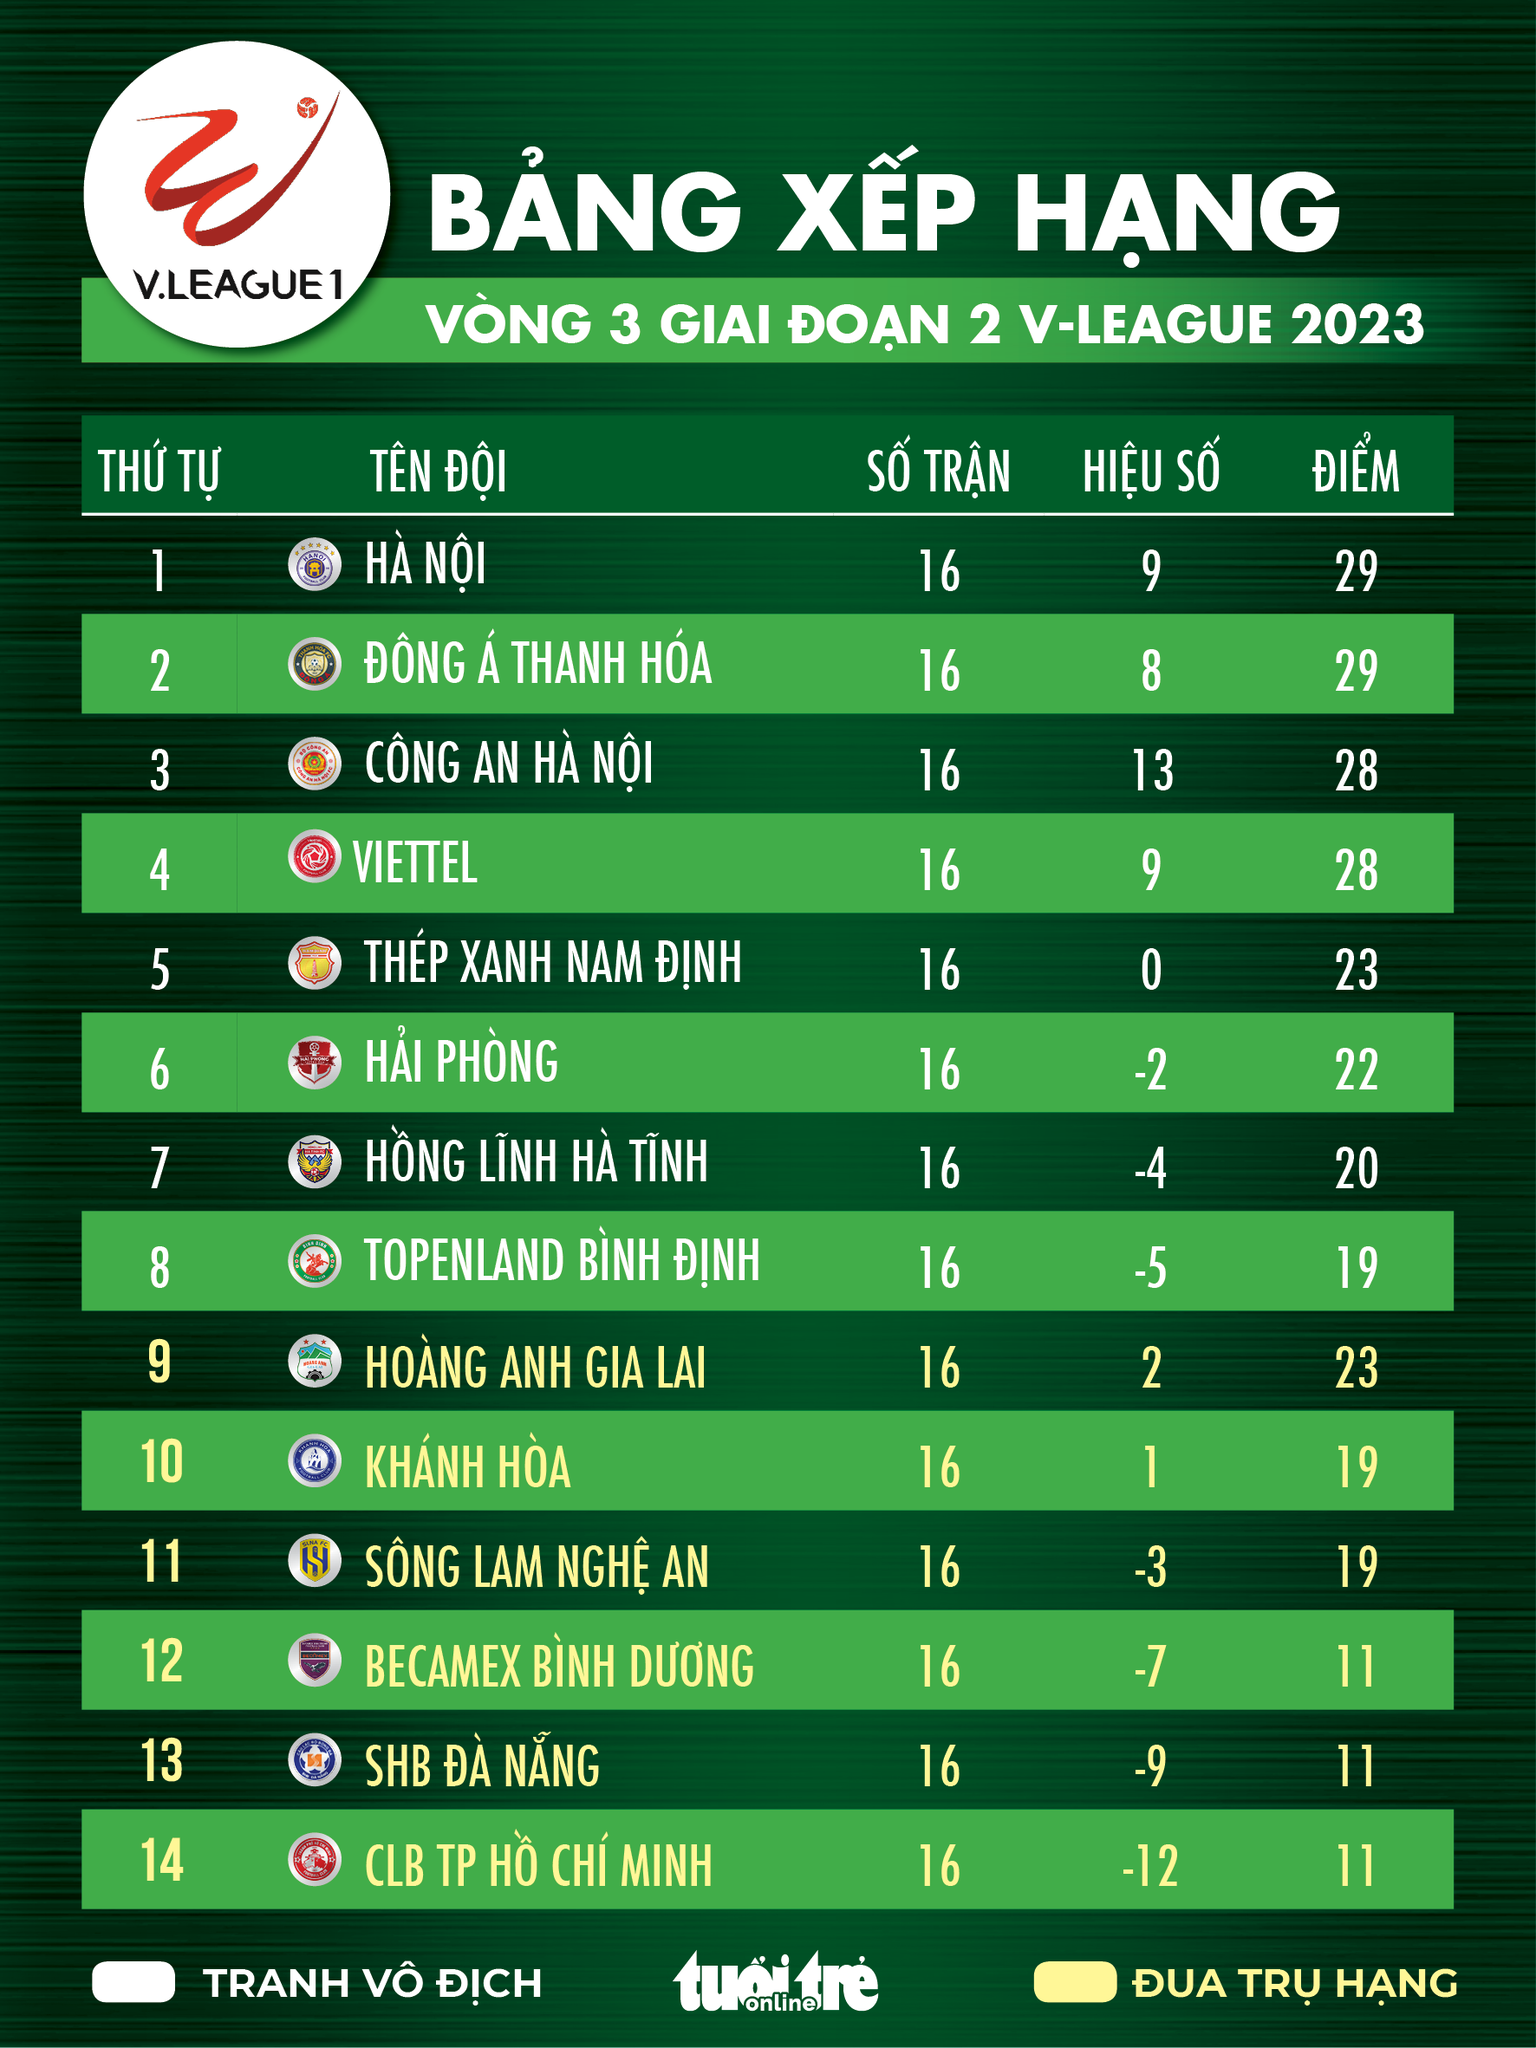 Bảng xếp hạng VLeague 2023 Công An Hà Nội mất ngôi đầu, 3 đội cuối